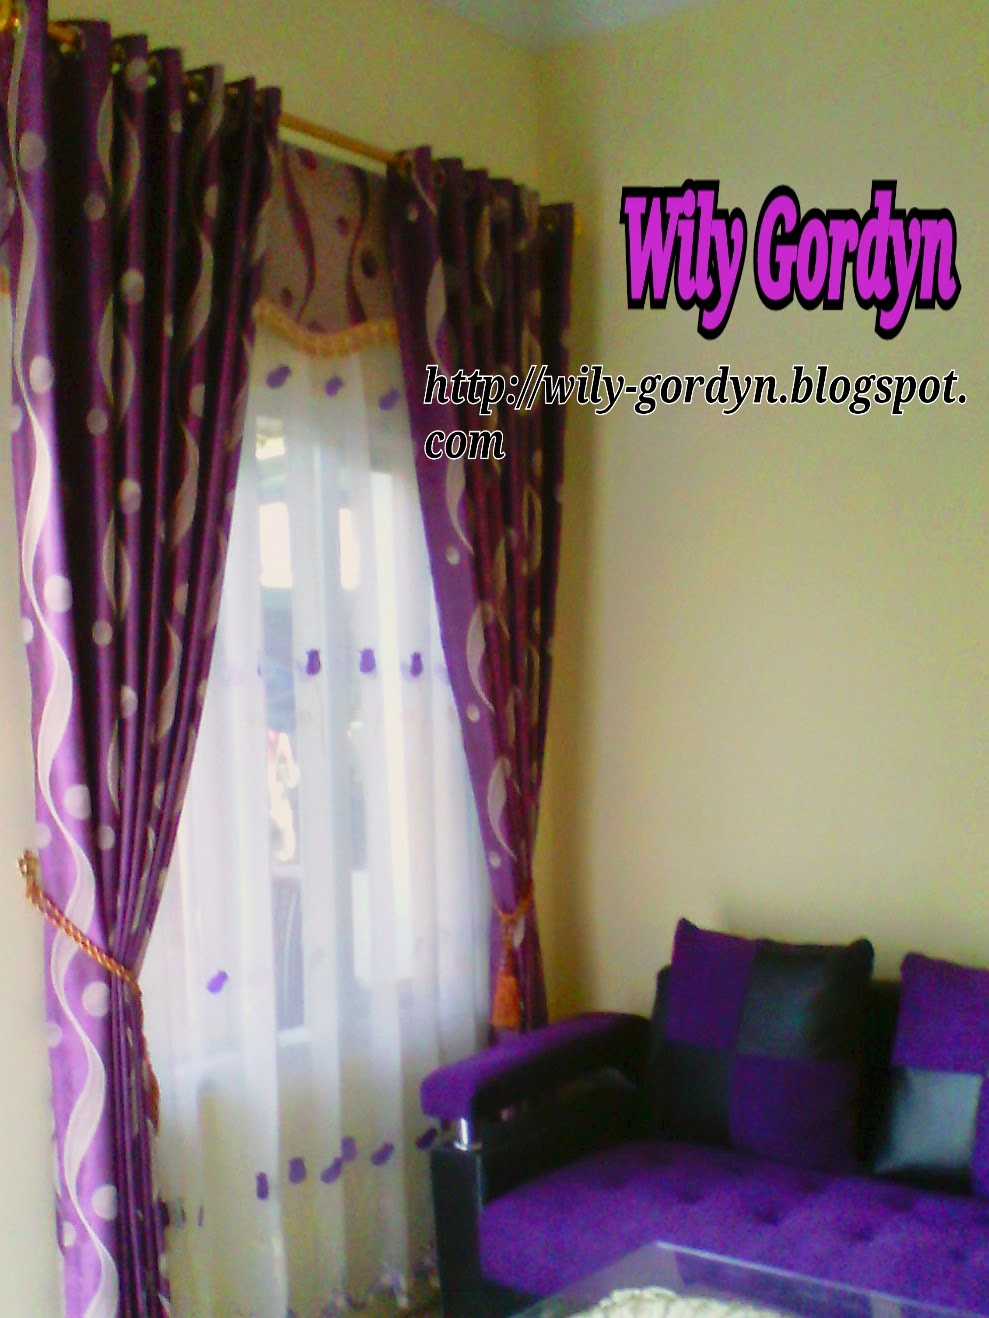 7 Contoh Warna Gorden Yang Bagus Untuk Rumah Minimalis Wily Gordyn